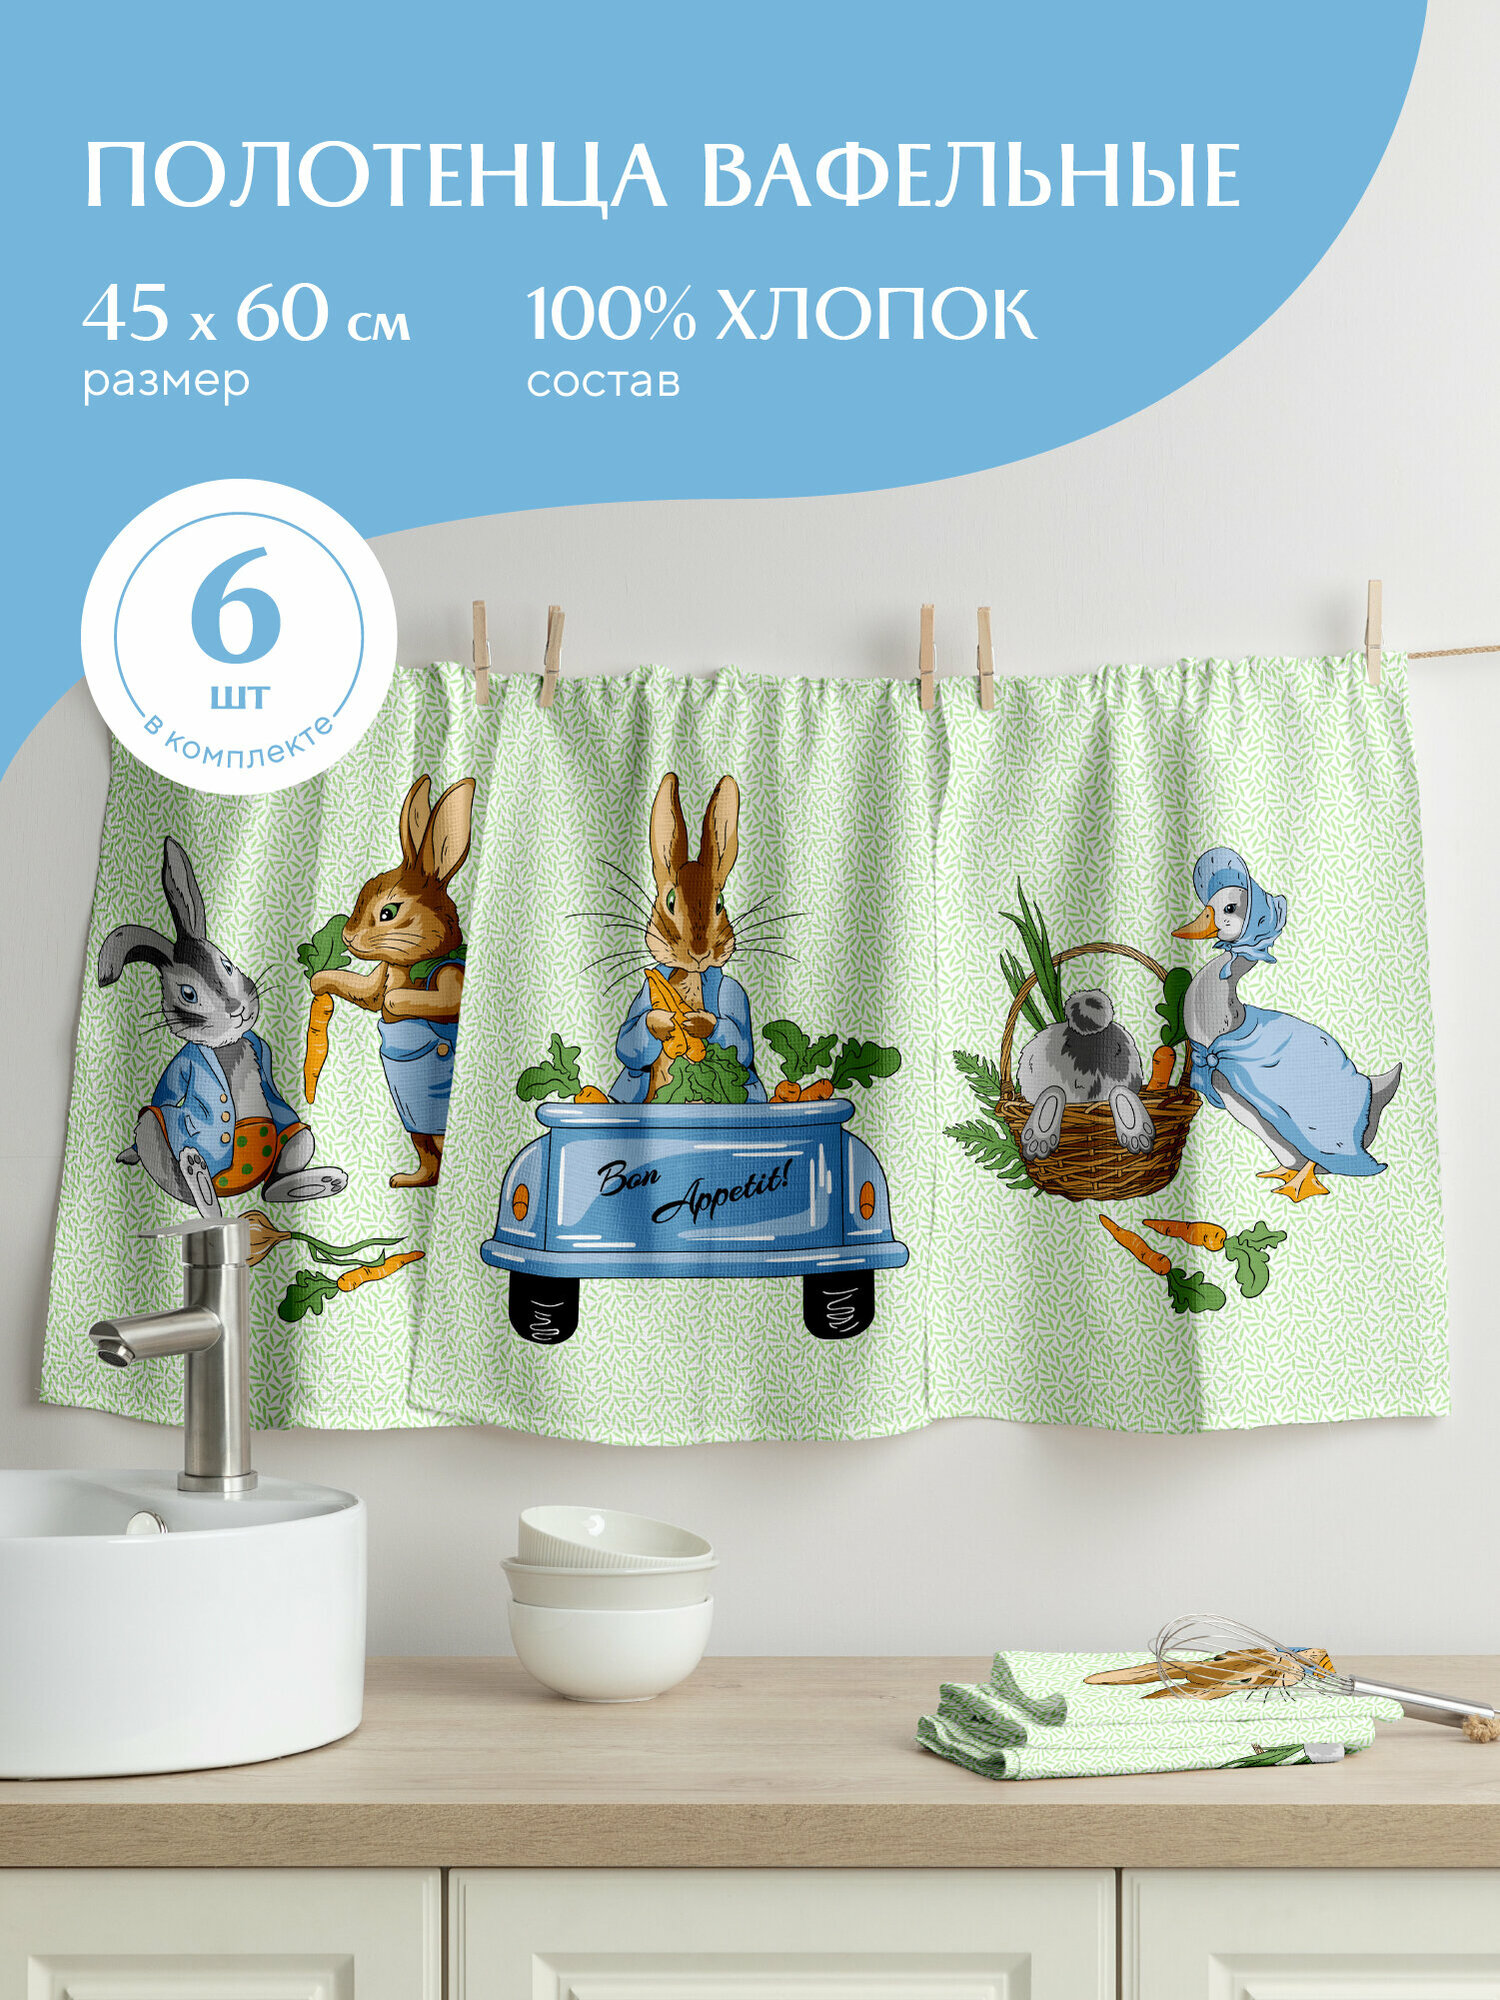 Набор вафельных полотенец 45х60 (6 шт.) "Mia Cara" рис 30632-1 Garden bunny - фотография № 2